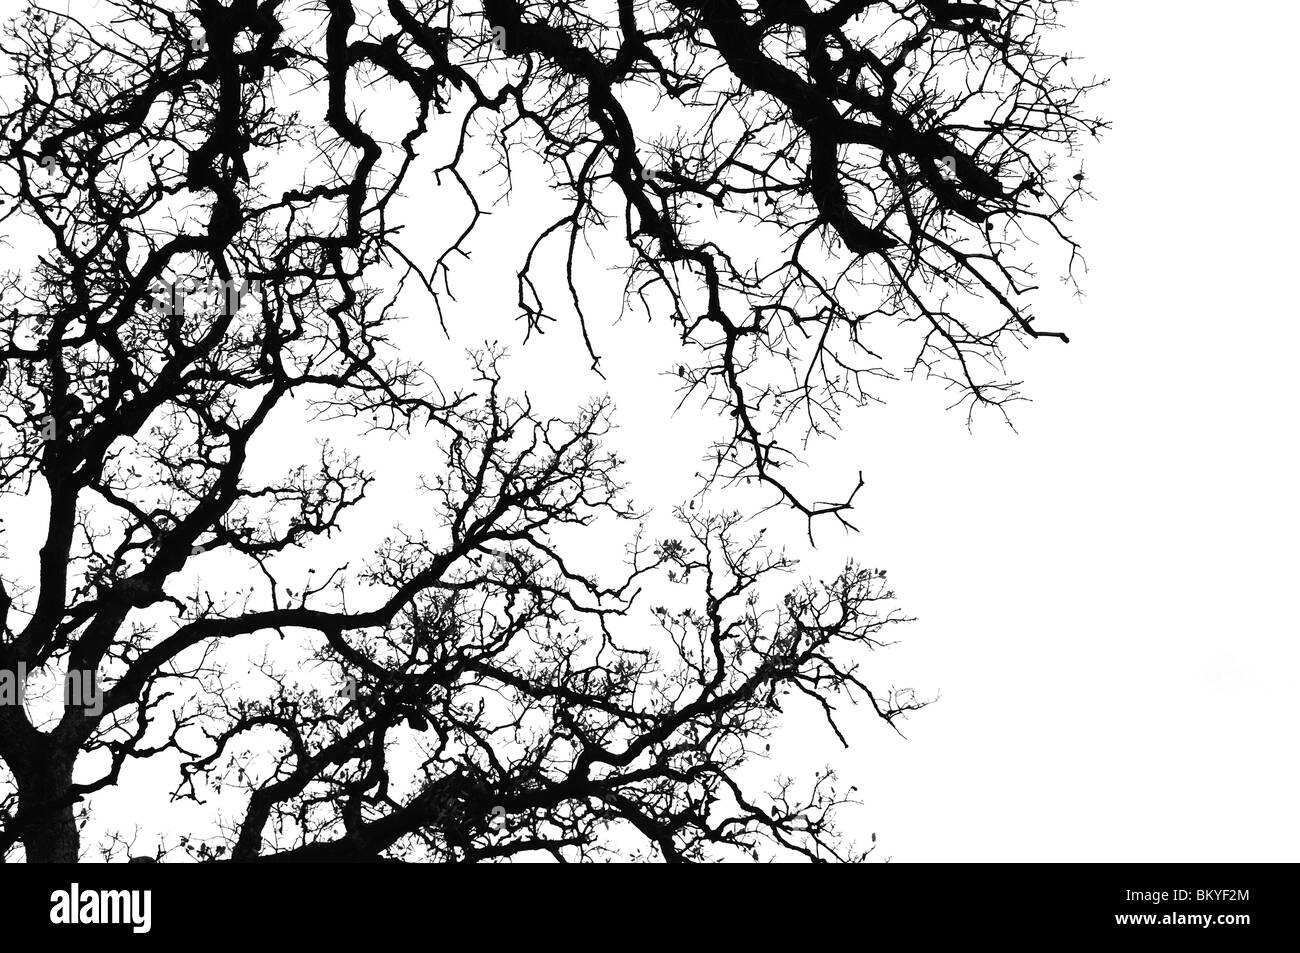 Les branches d'arbre de chêne silhouette. Noir et blanc. Banque D'Images